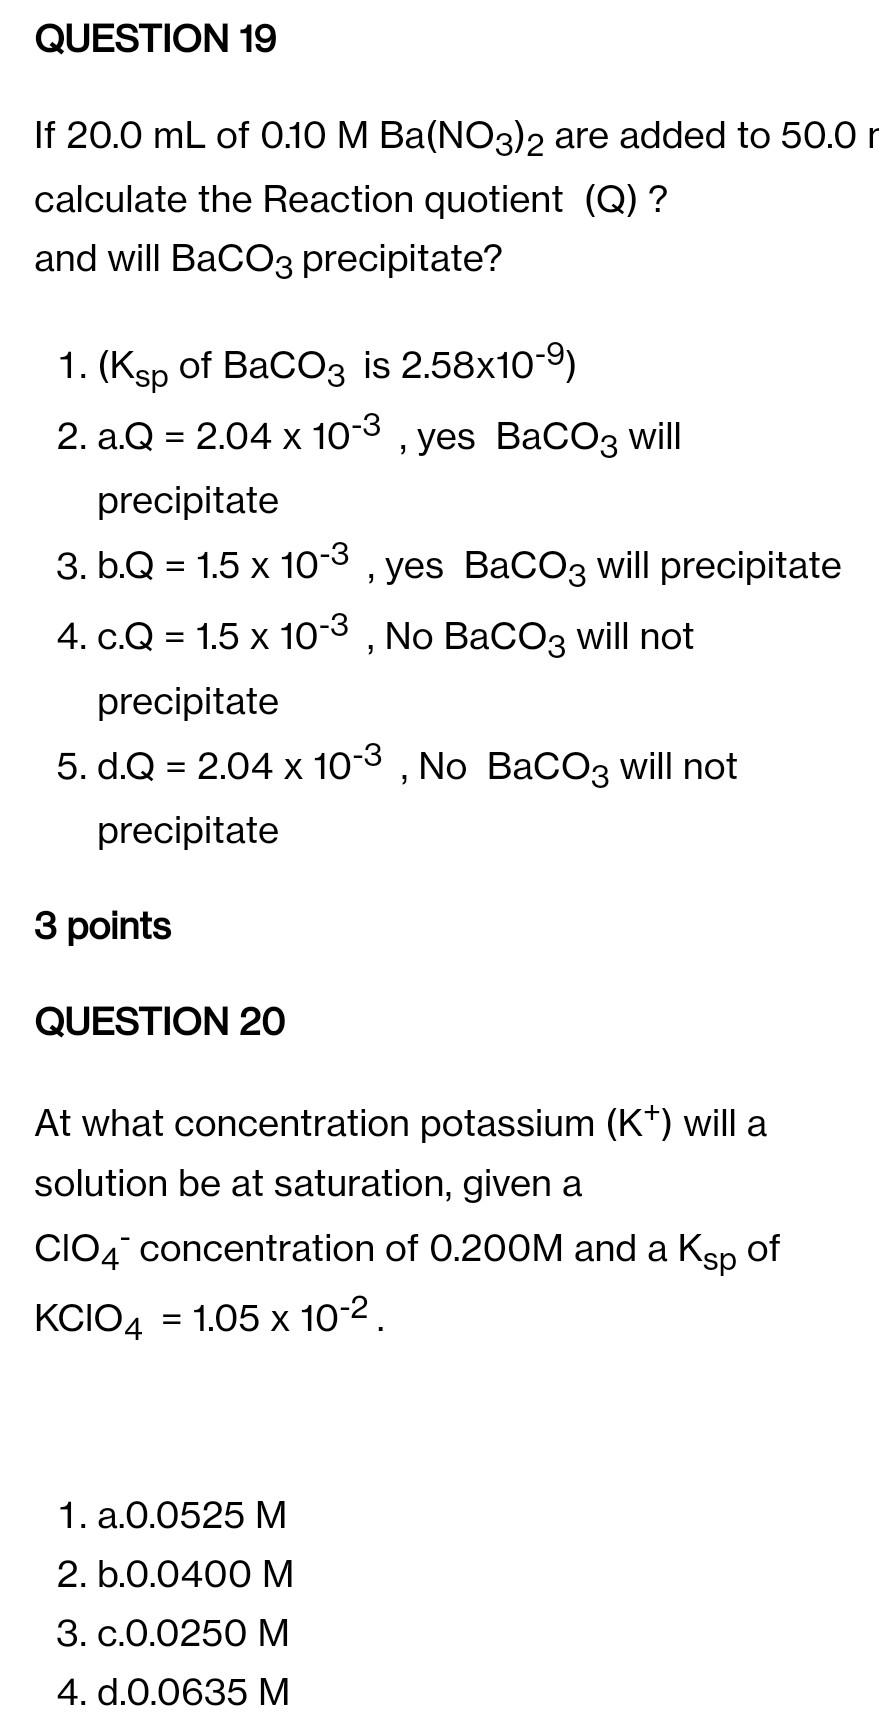 M BaCO3: Tìm hiểu khối lượng mol của Barium Carbonate